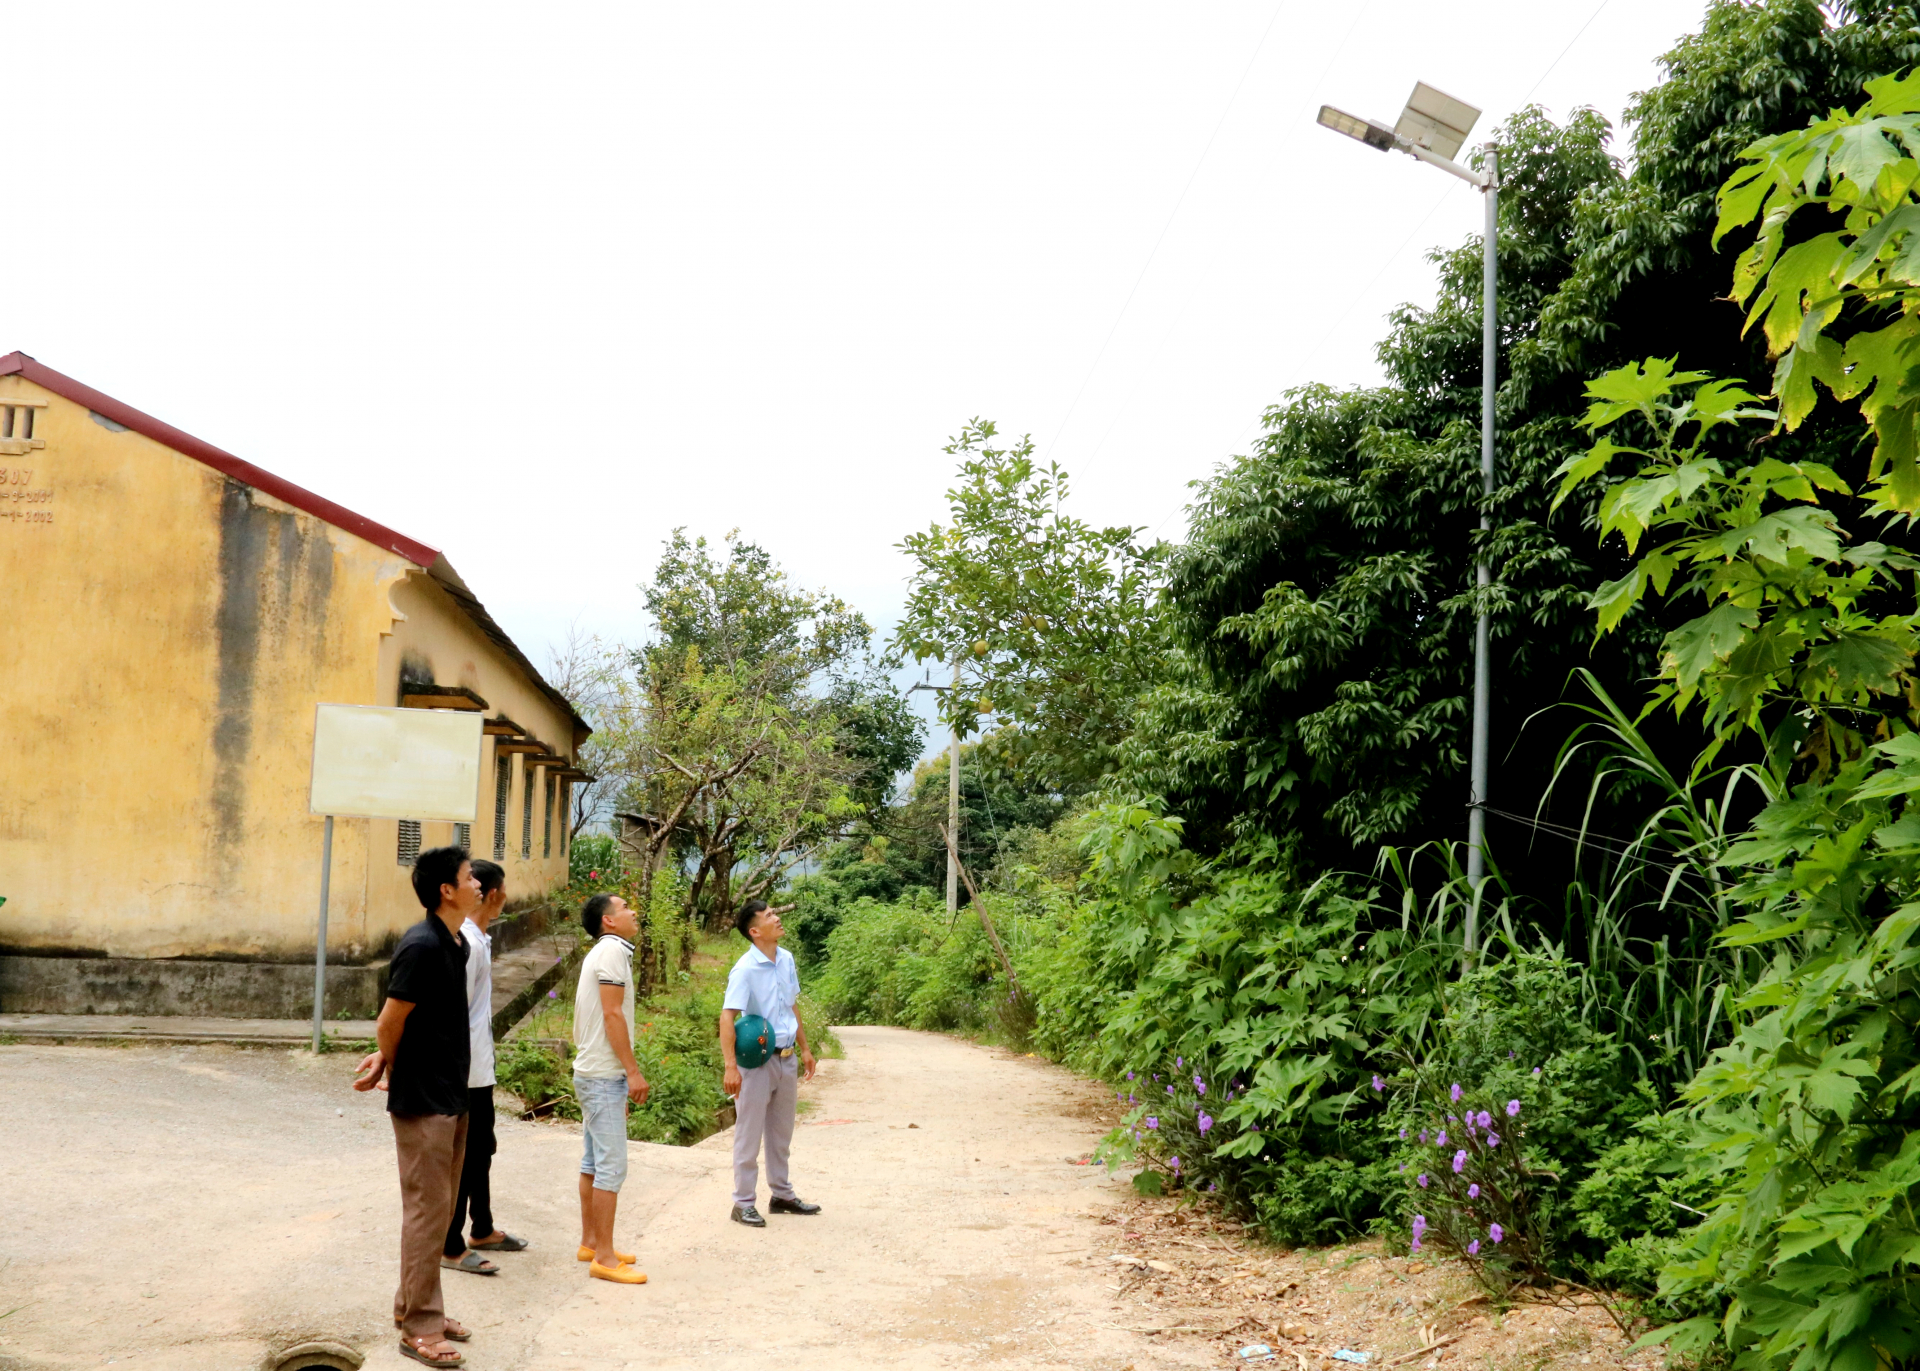 Đường liên thôn của xã Nghĩa Thuận (Quản Bạ) được đổ bê tông, lắp đặt đèn đường năng lượng mặt trời.
